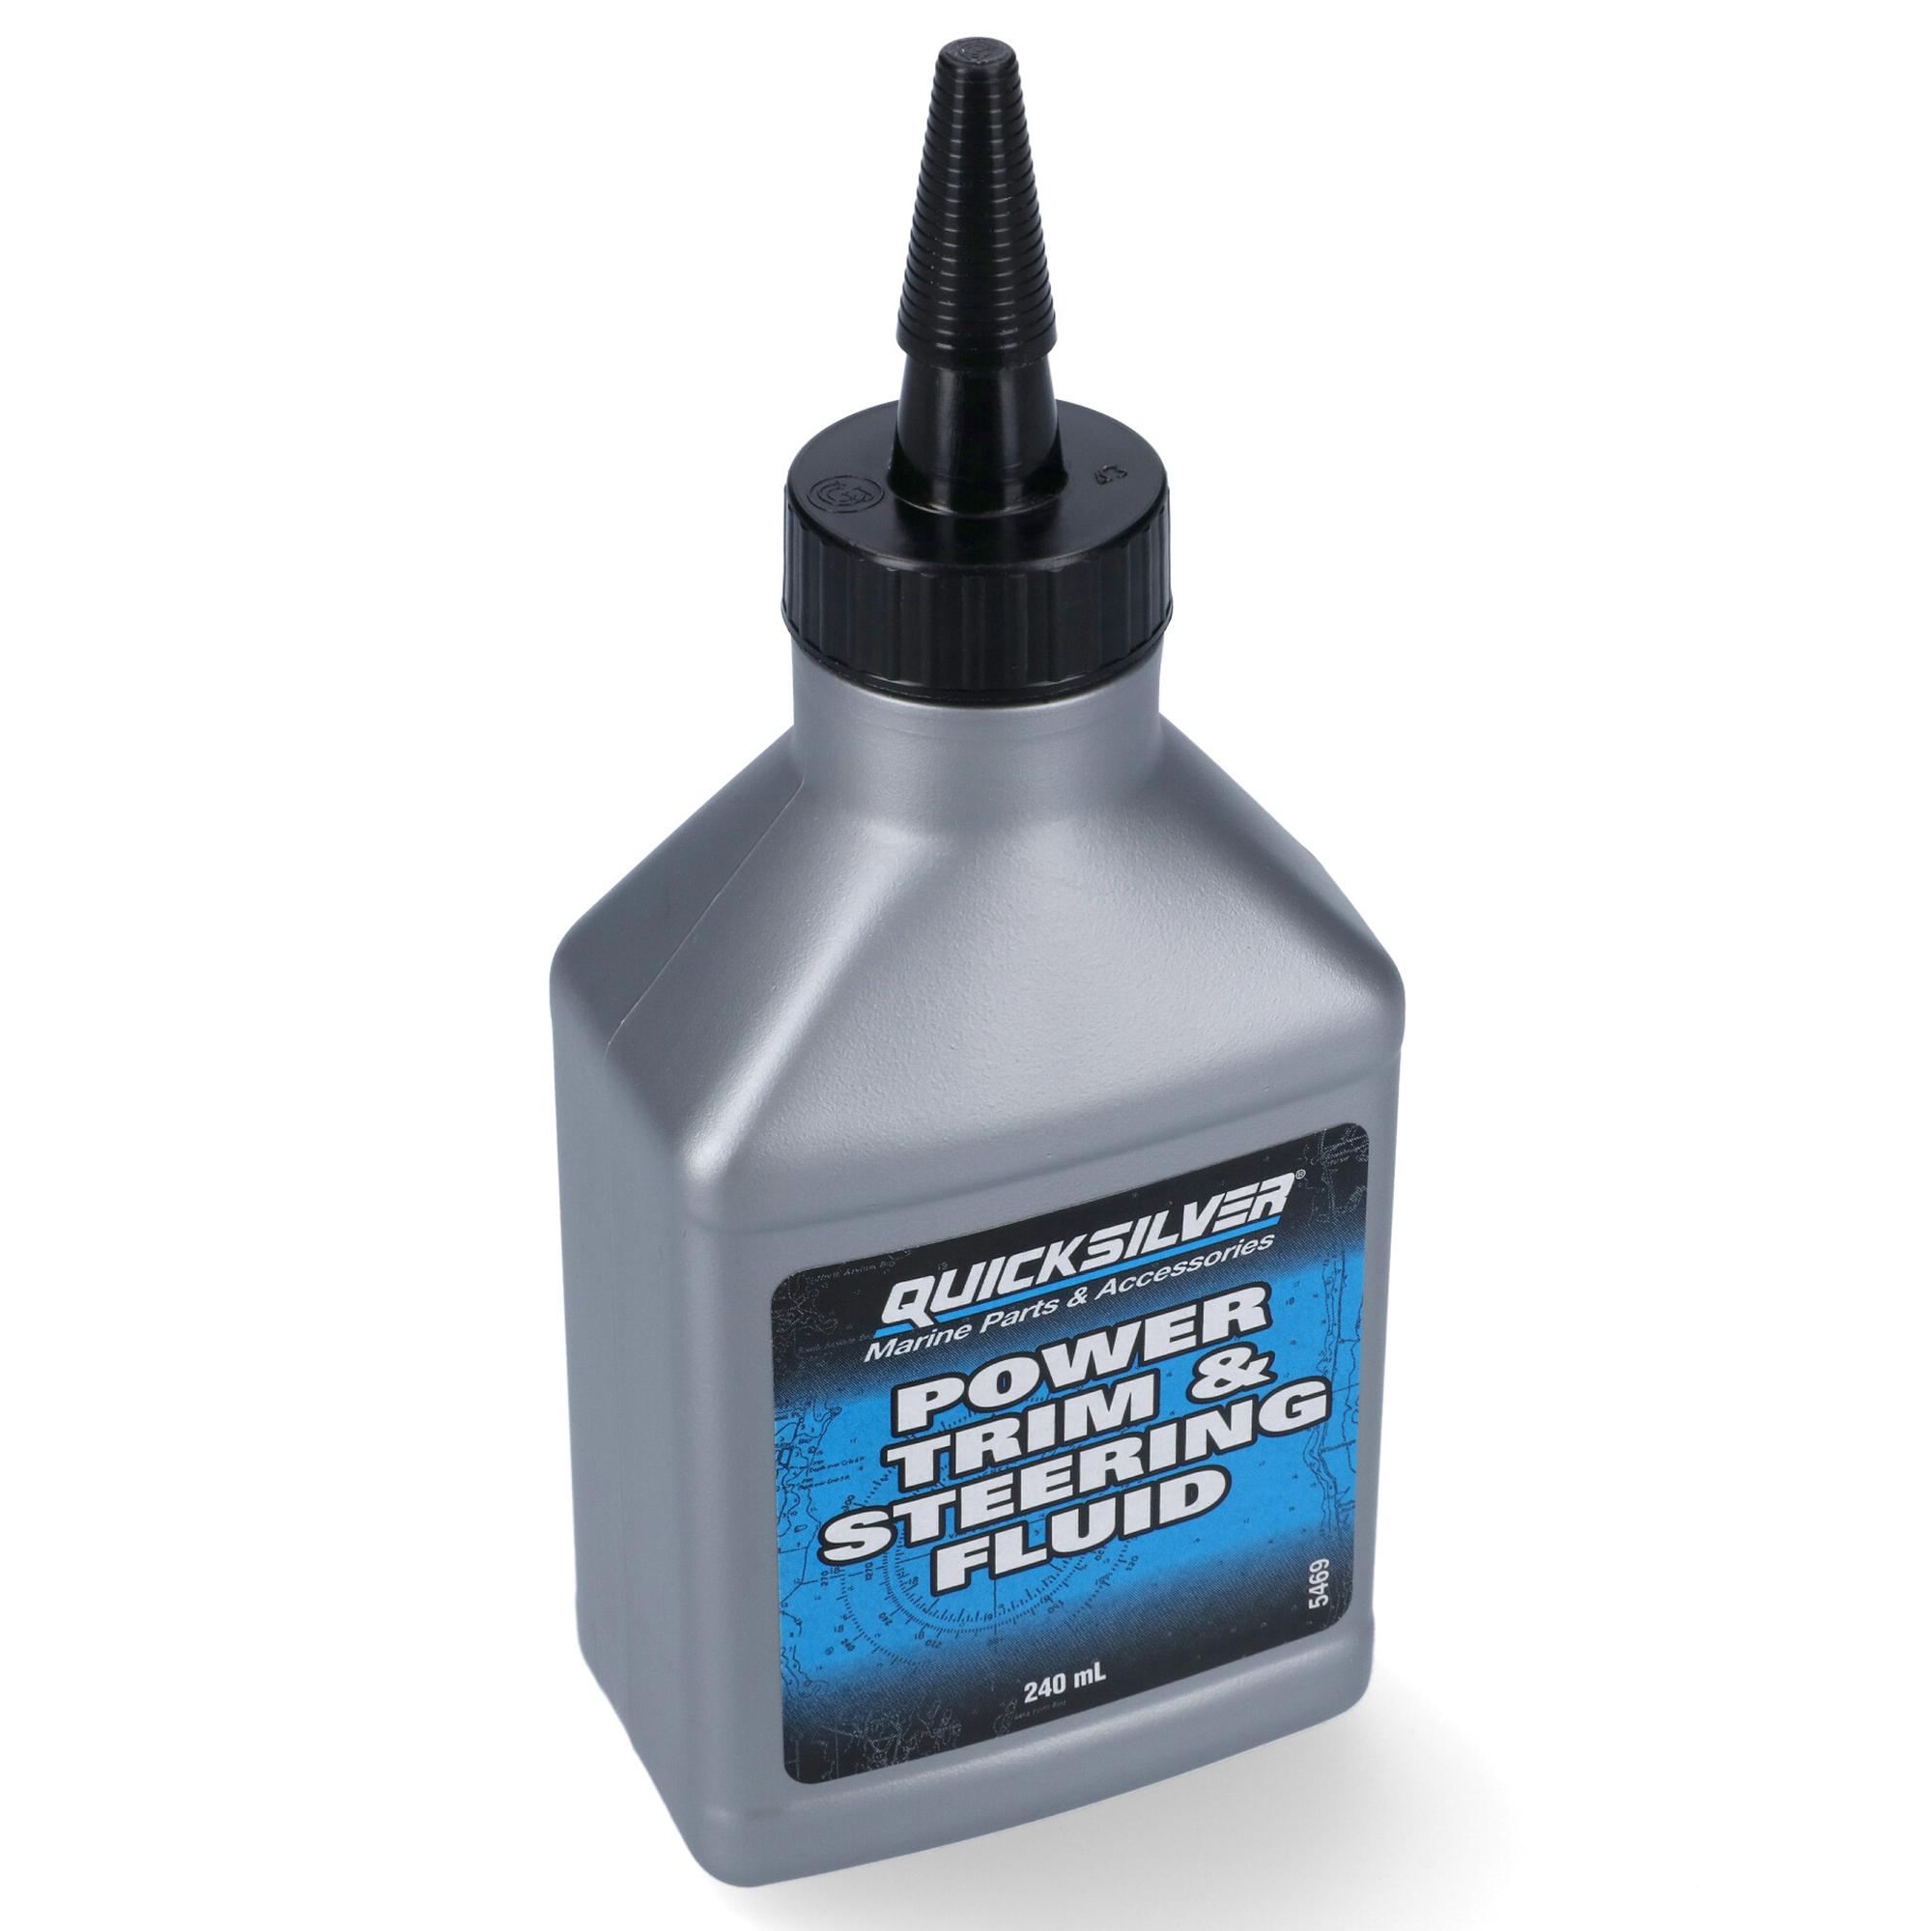 Quicksilver Power Trim & Steering Fluid - 240 ml - Hydrauliköl für Trimm- und Lenksysteme